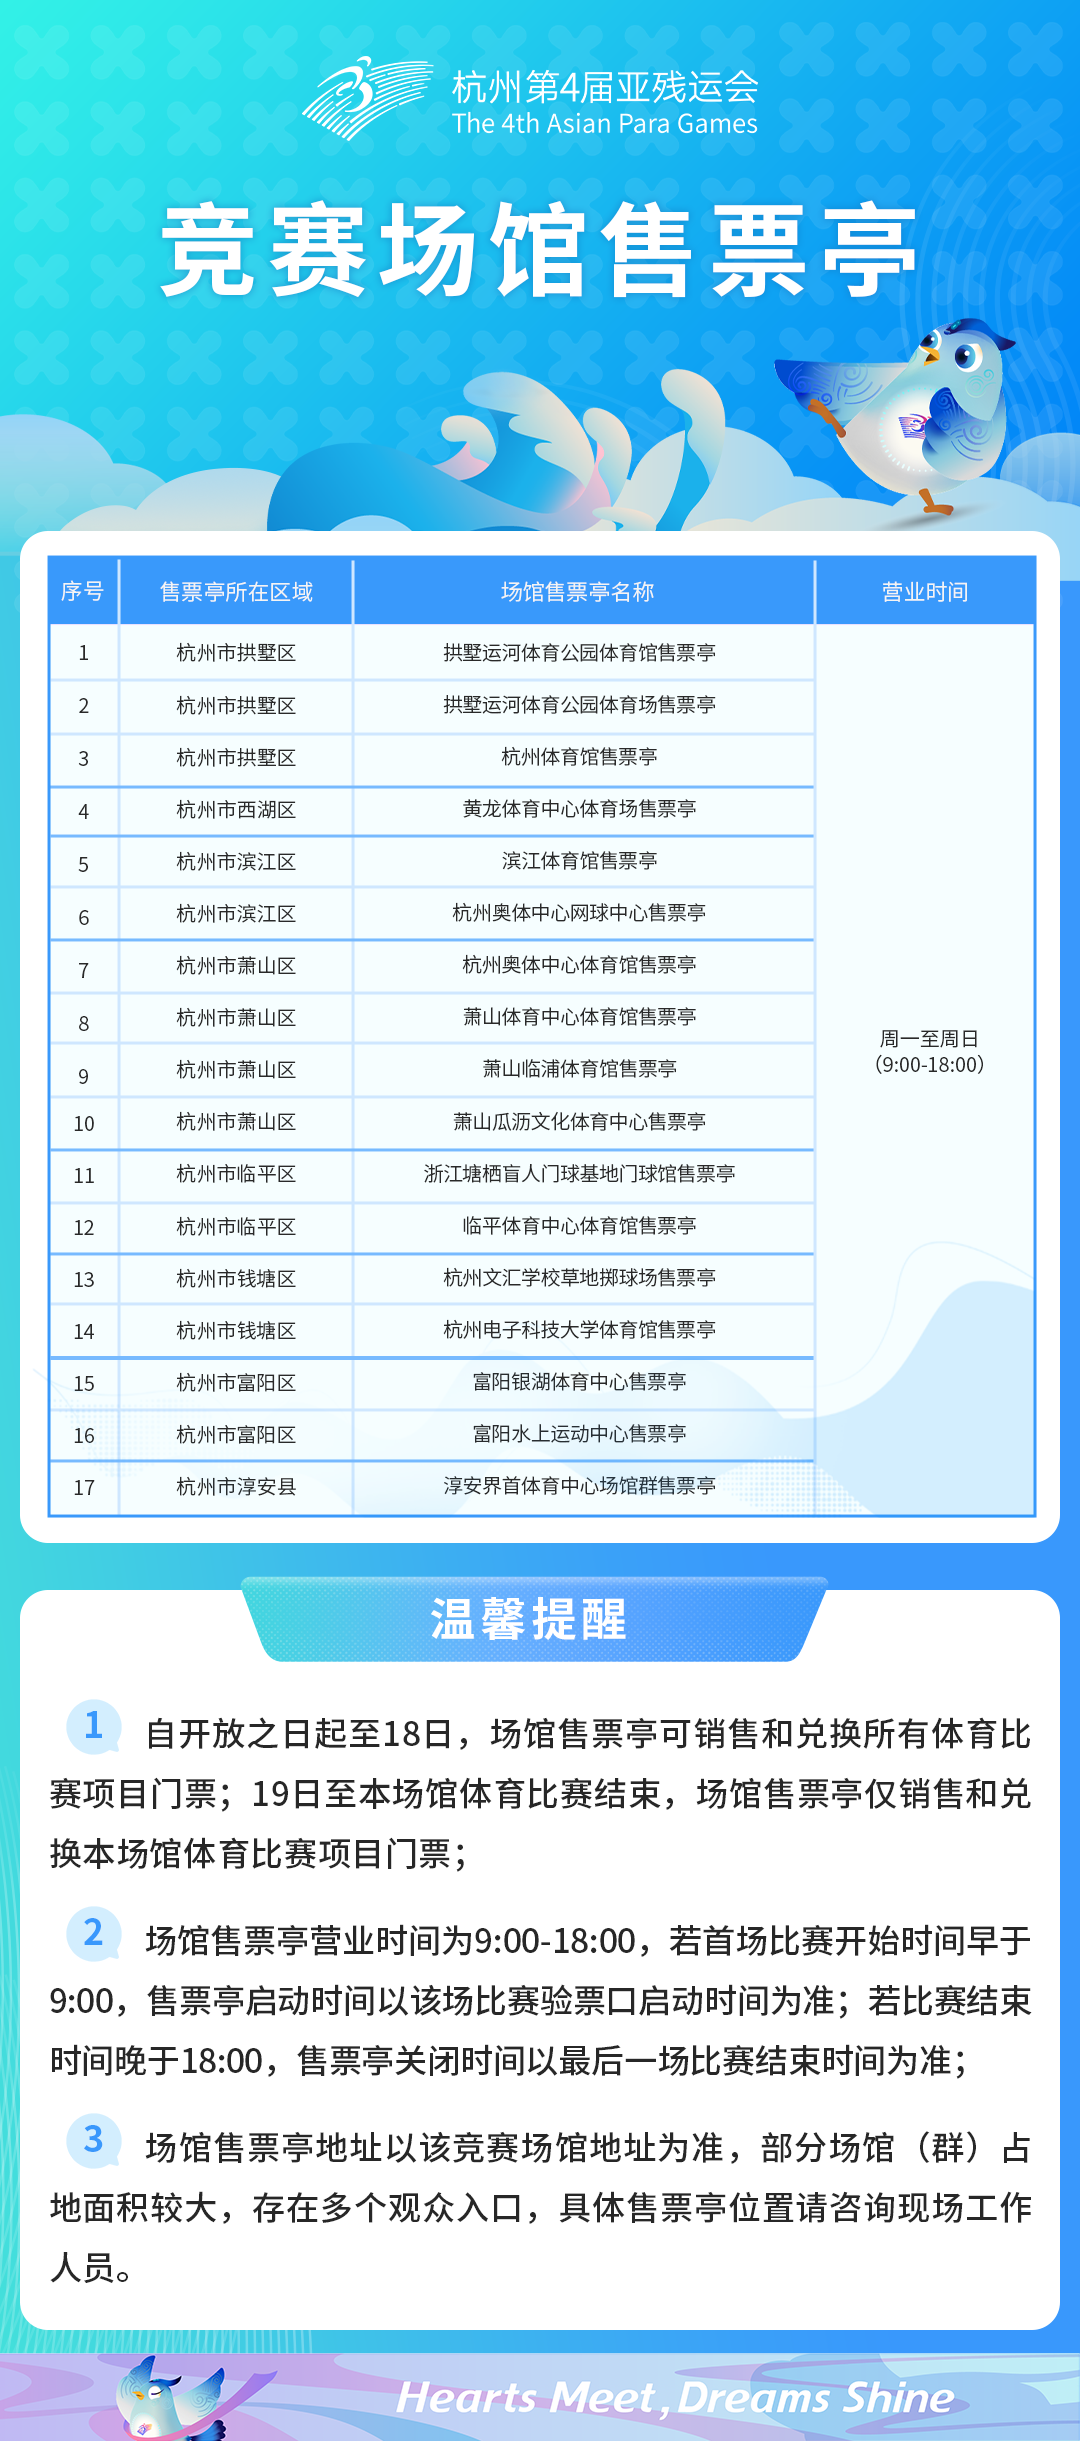 杭州亚残运会体育比赛门票线下购票渠道10月15日起开放，项目陆续上架，线上线下均